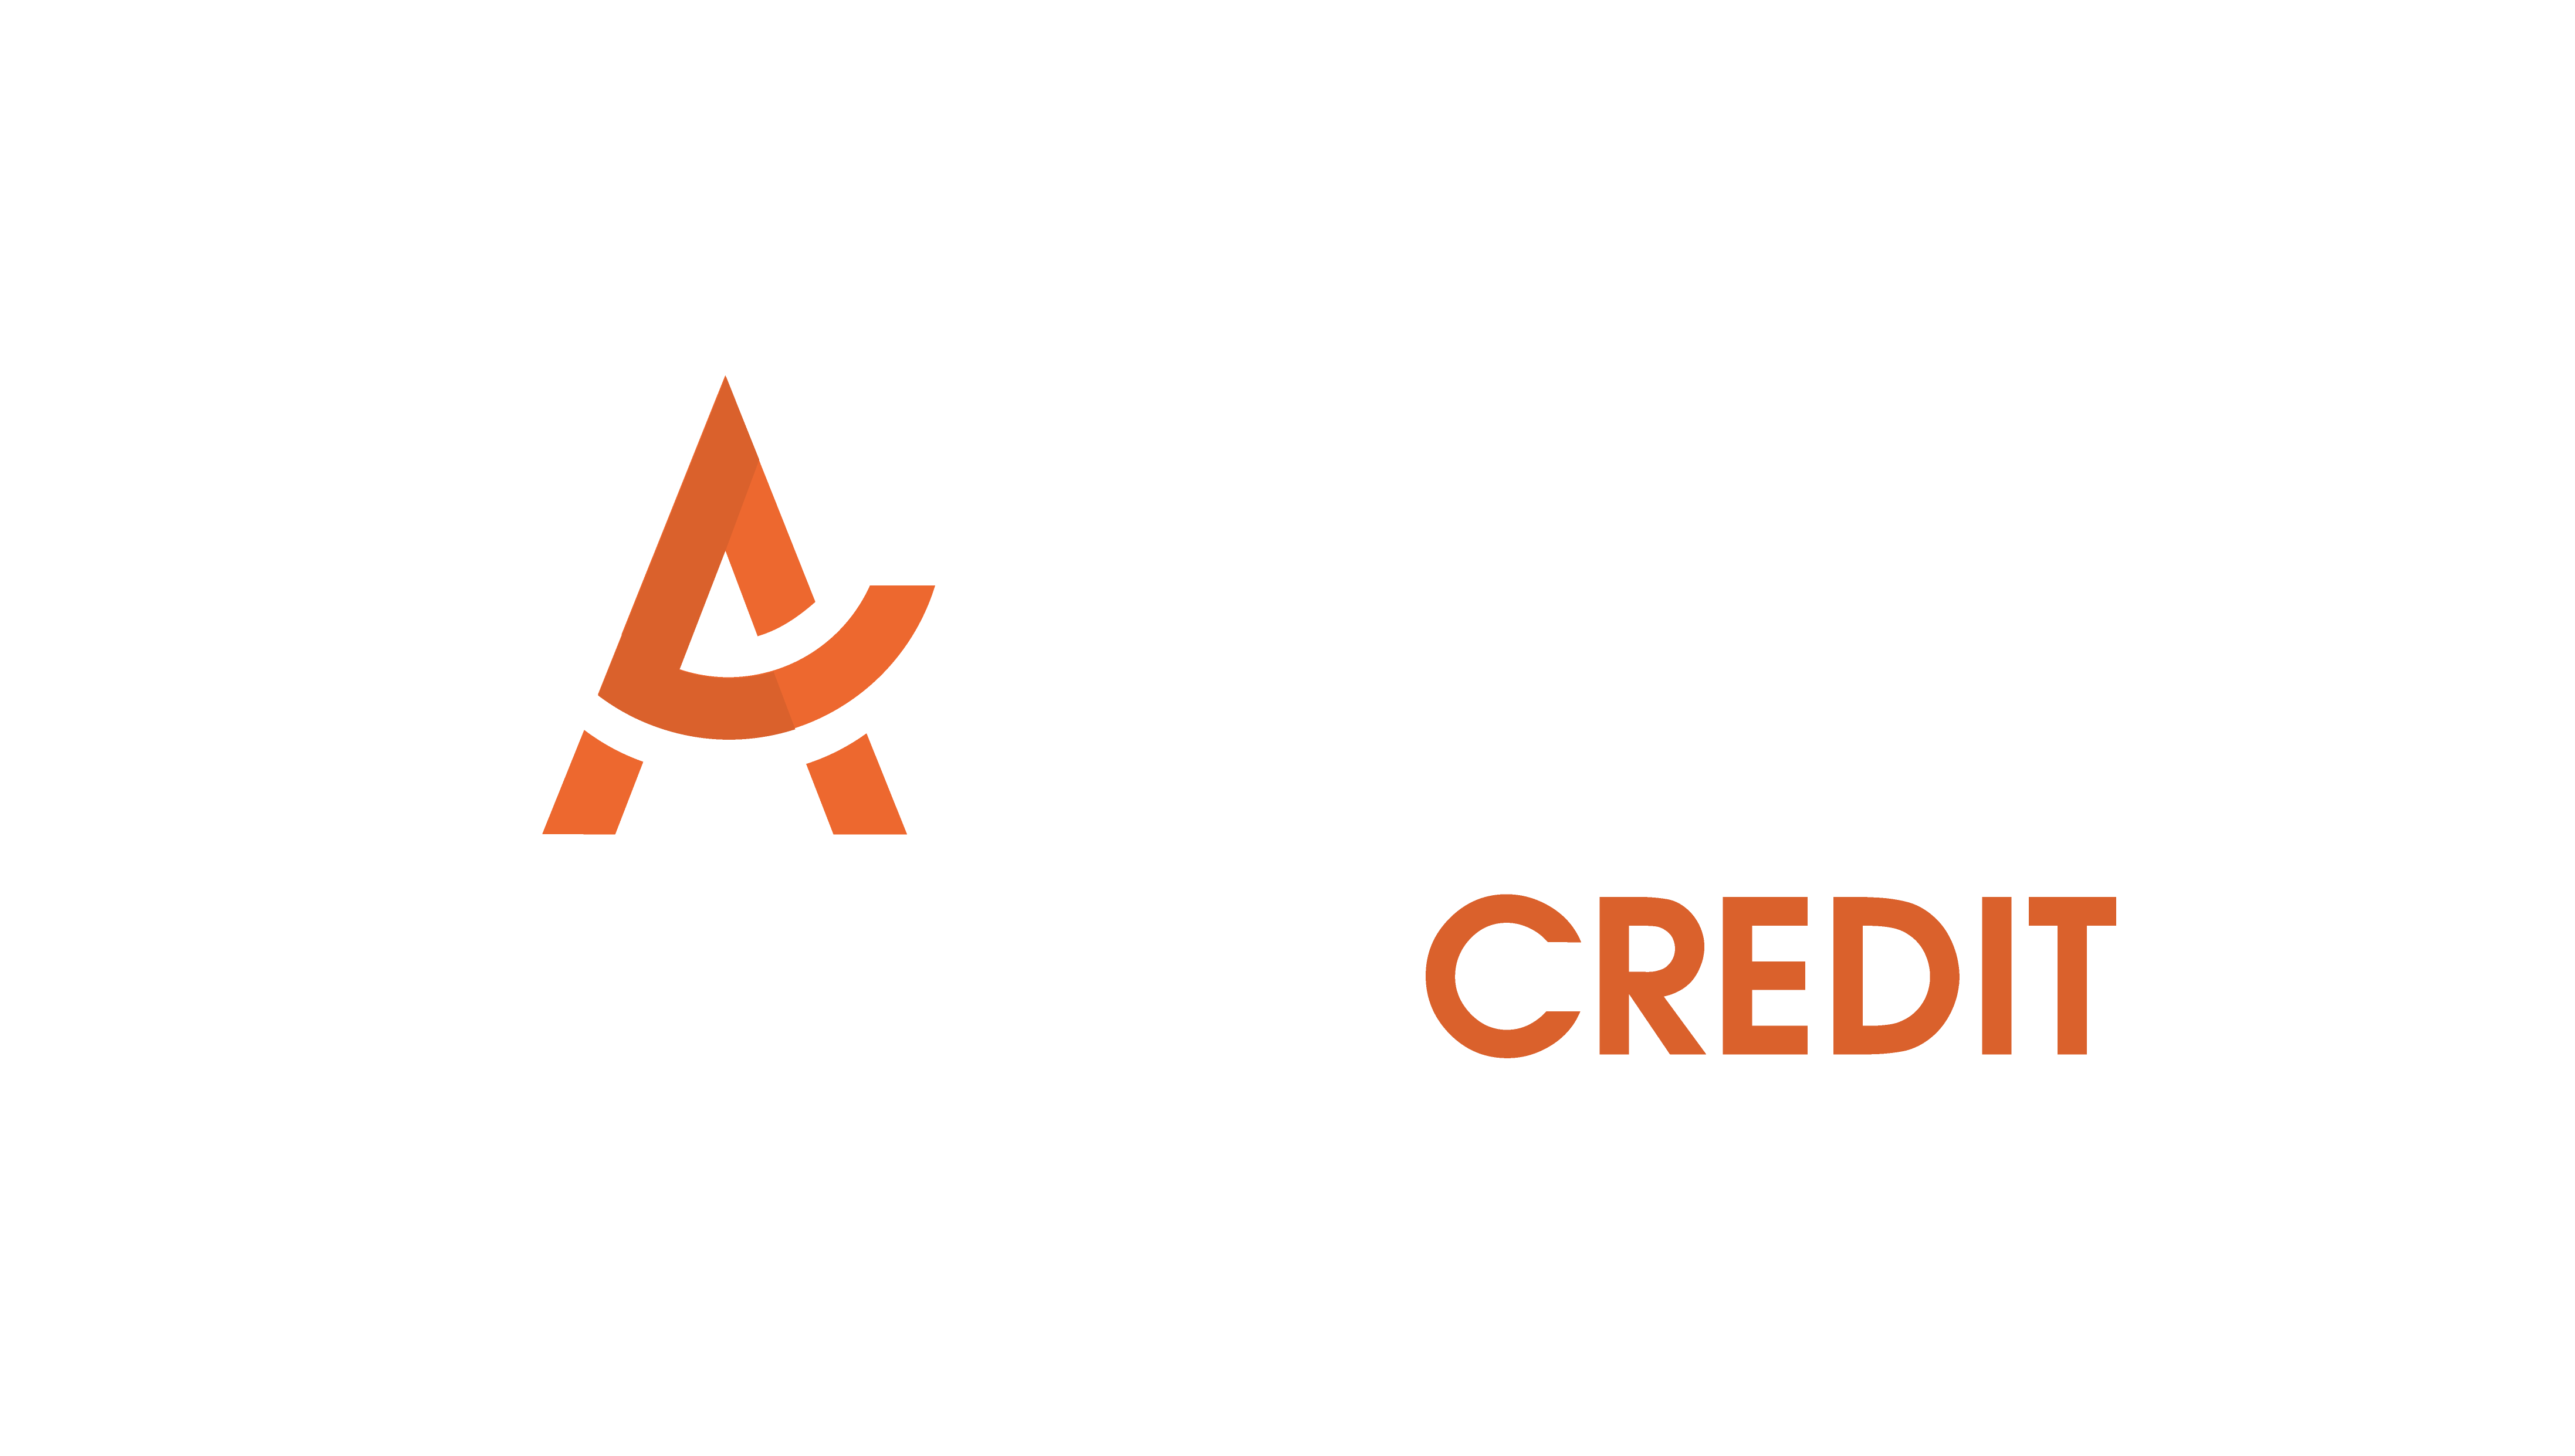 Albalux Credit